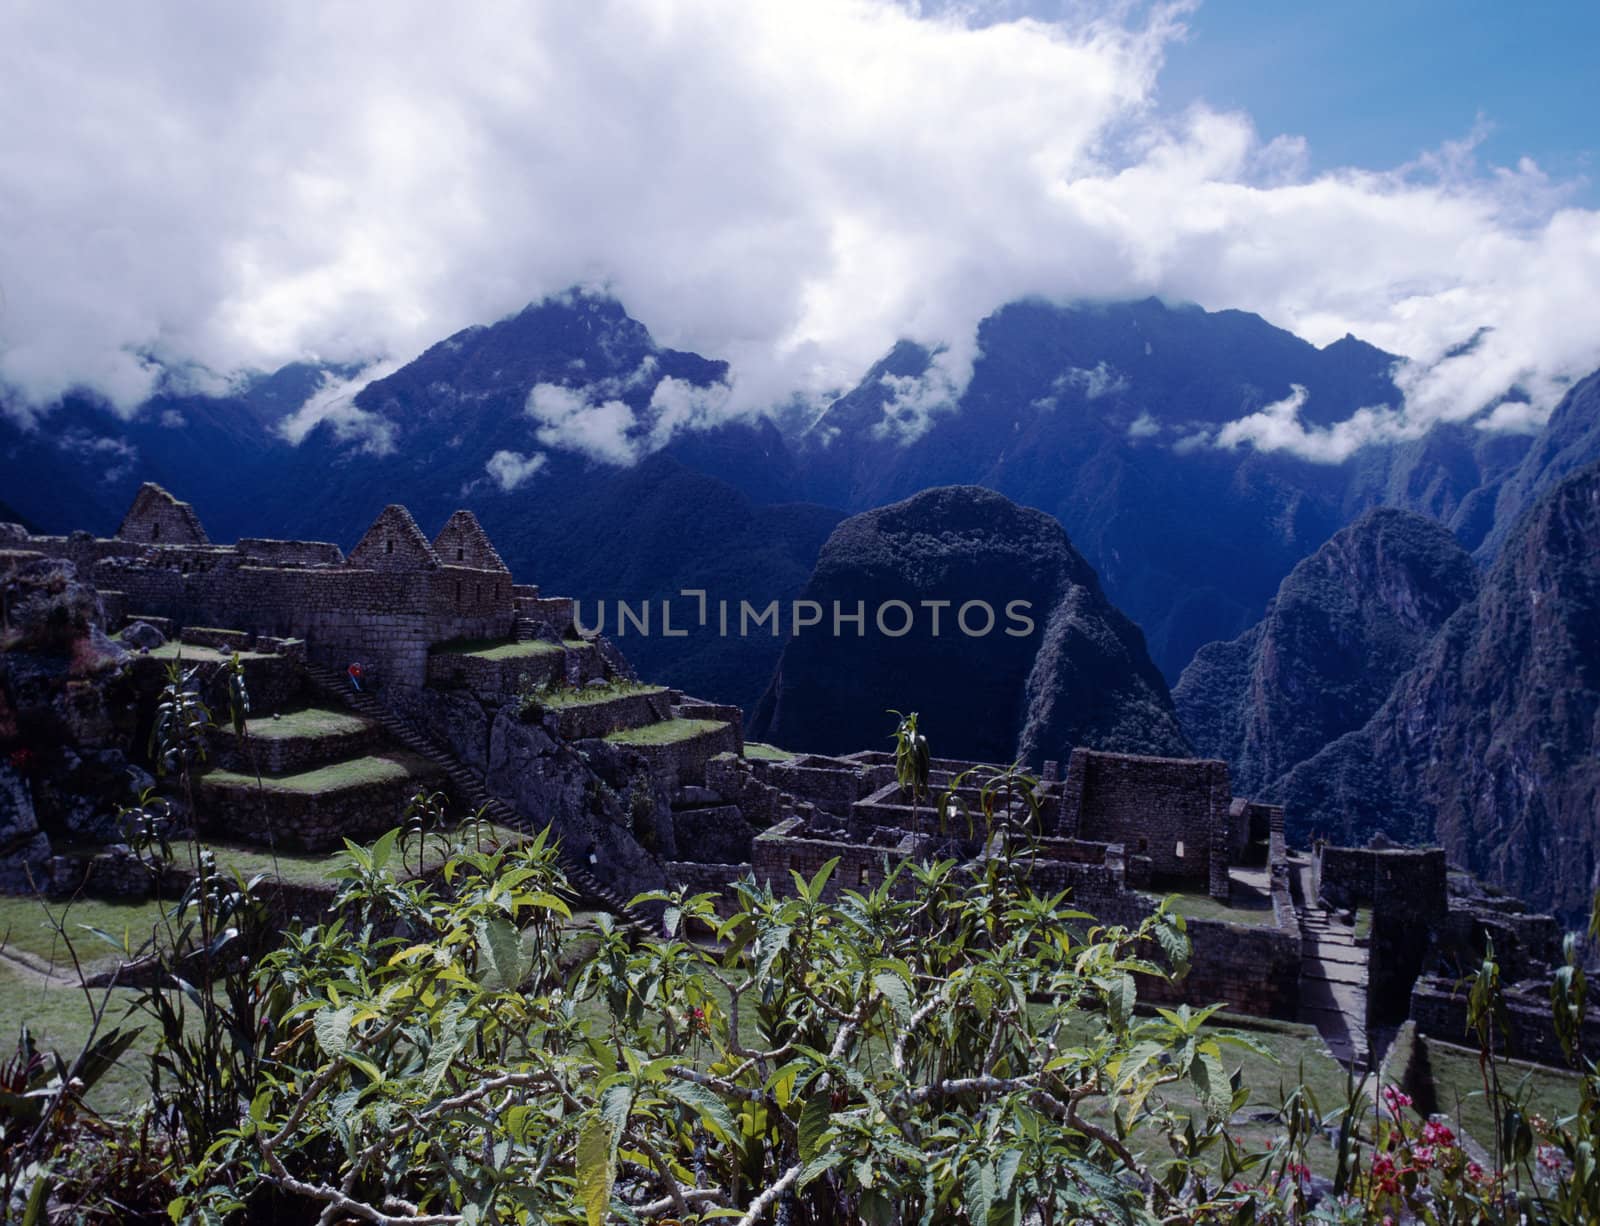 Ruins of lost Inca temple city, Machu Picchu in Peru